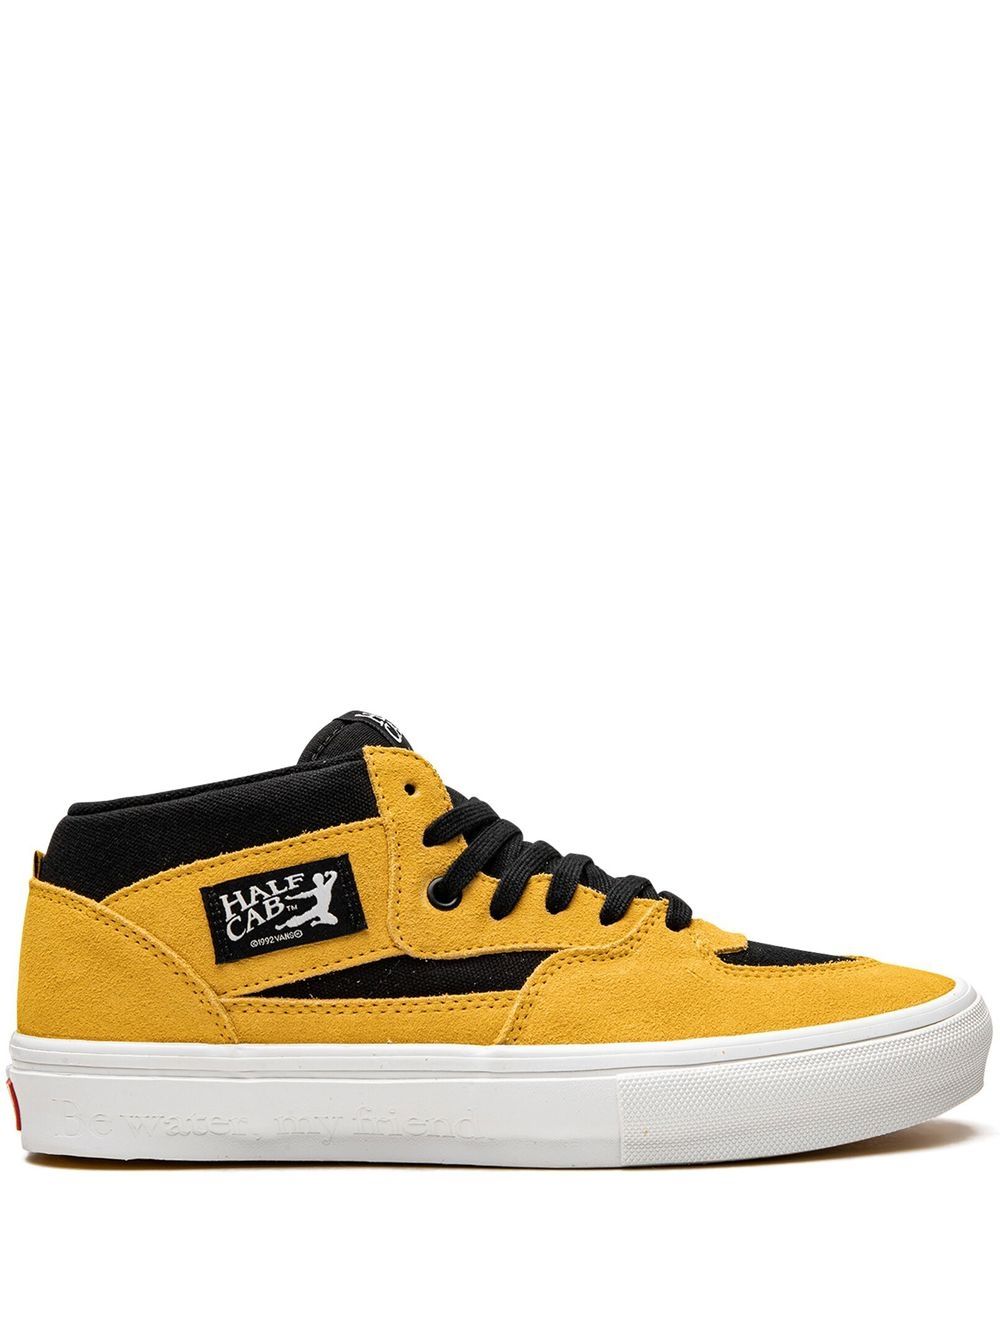 Vans x Bruce Lee Skate Half Cab sneakers - Yellow von Vans